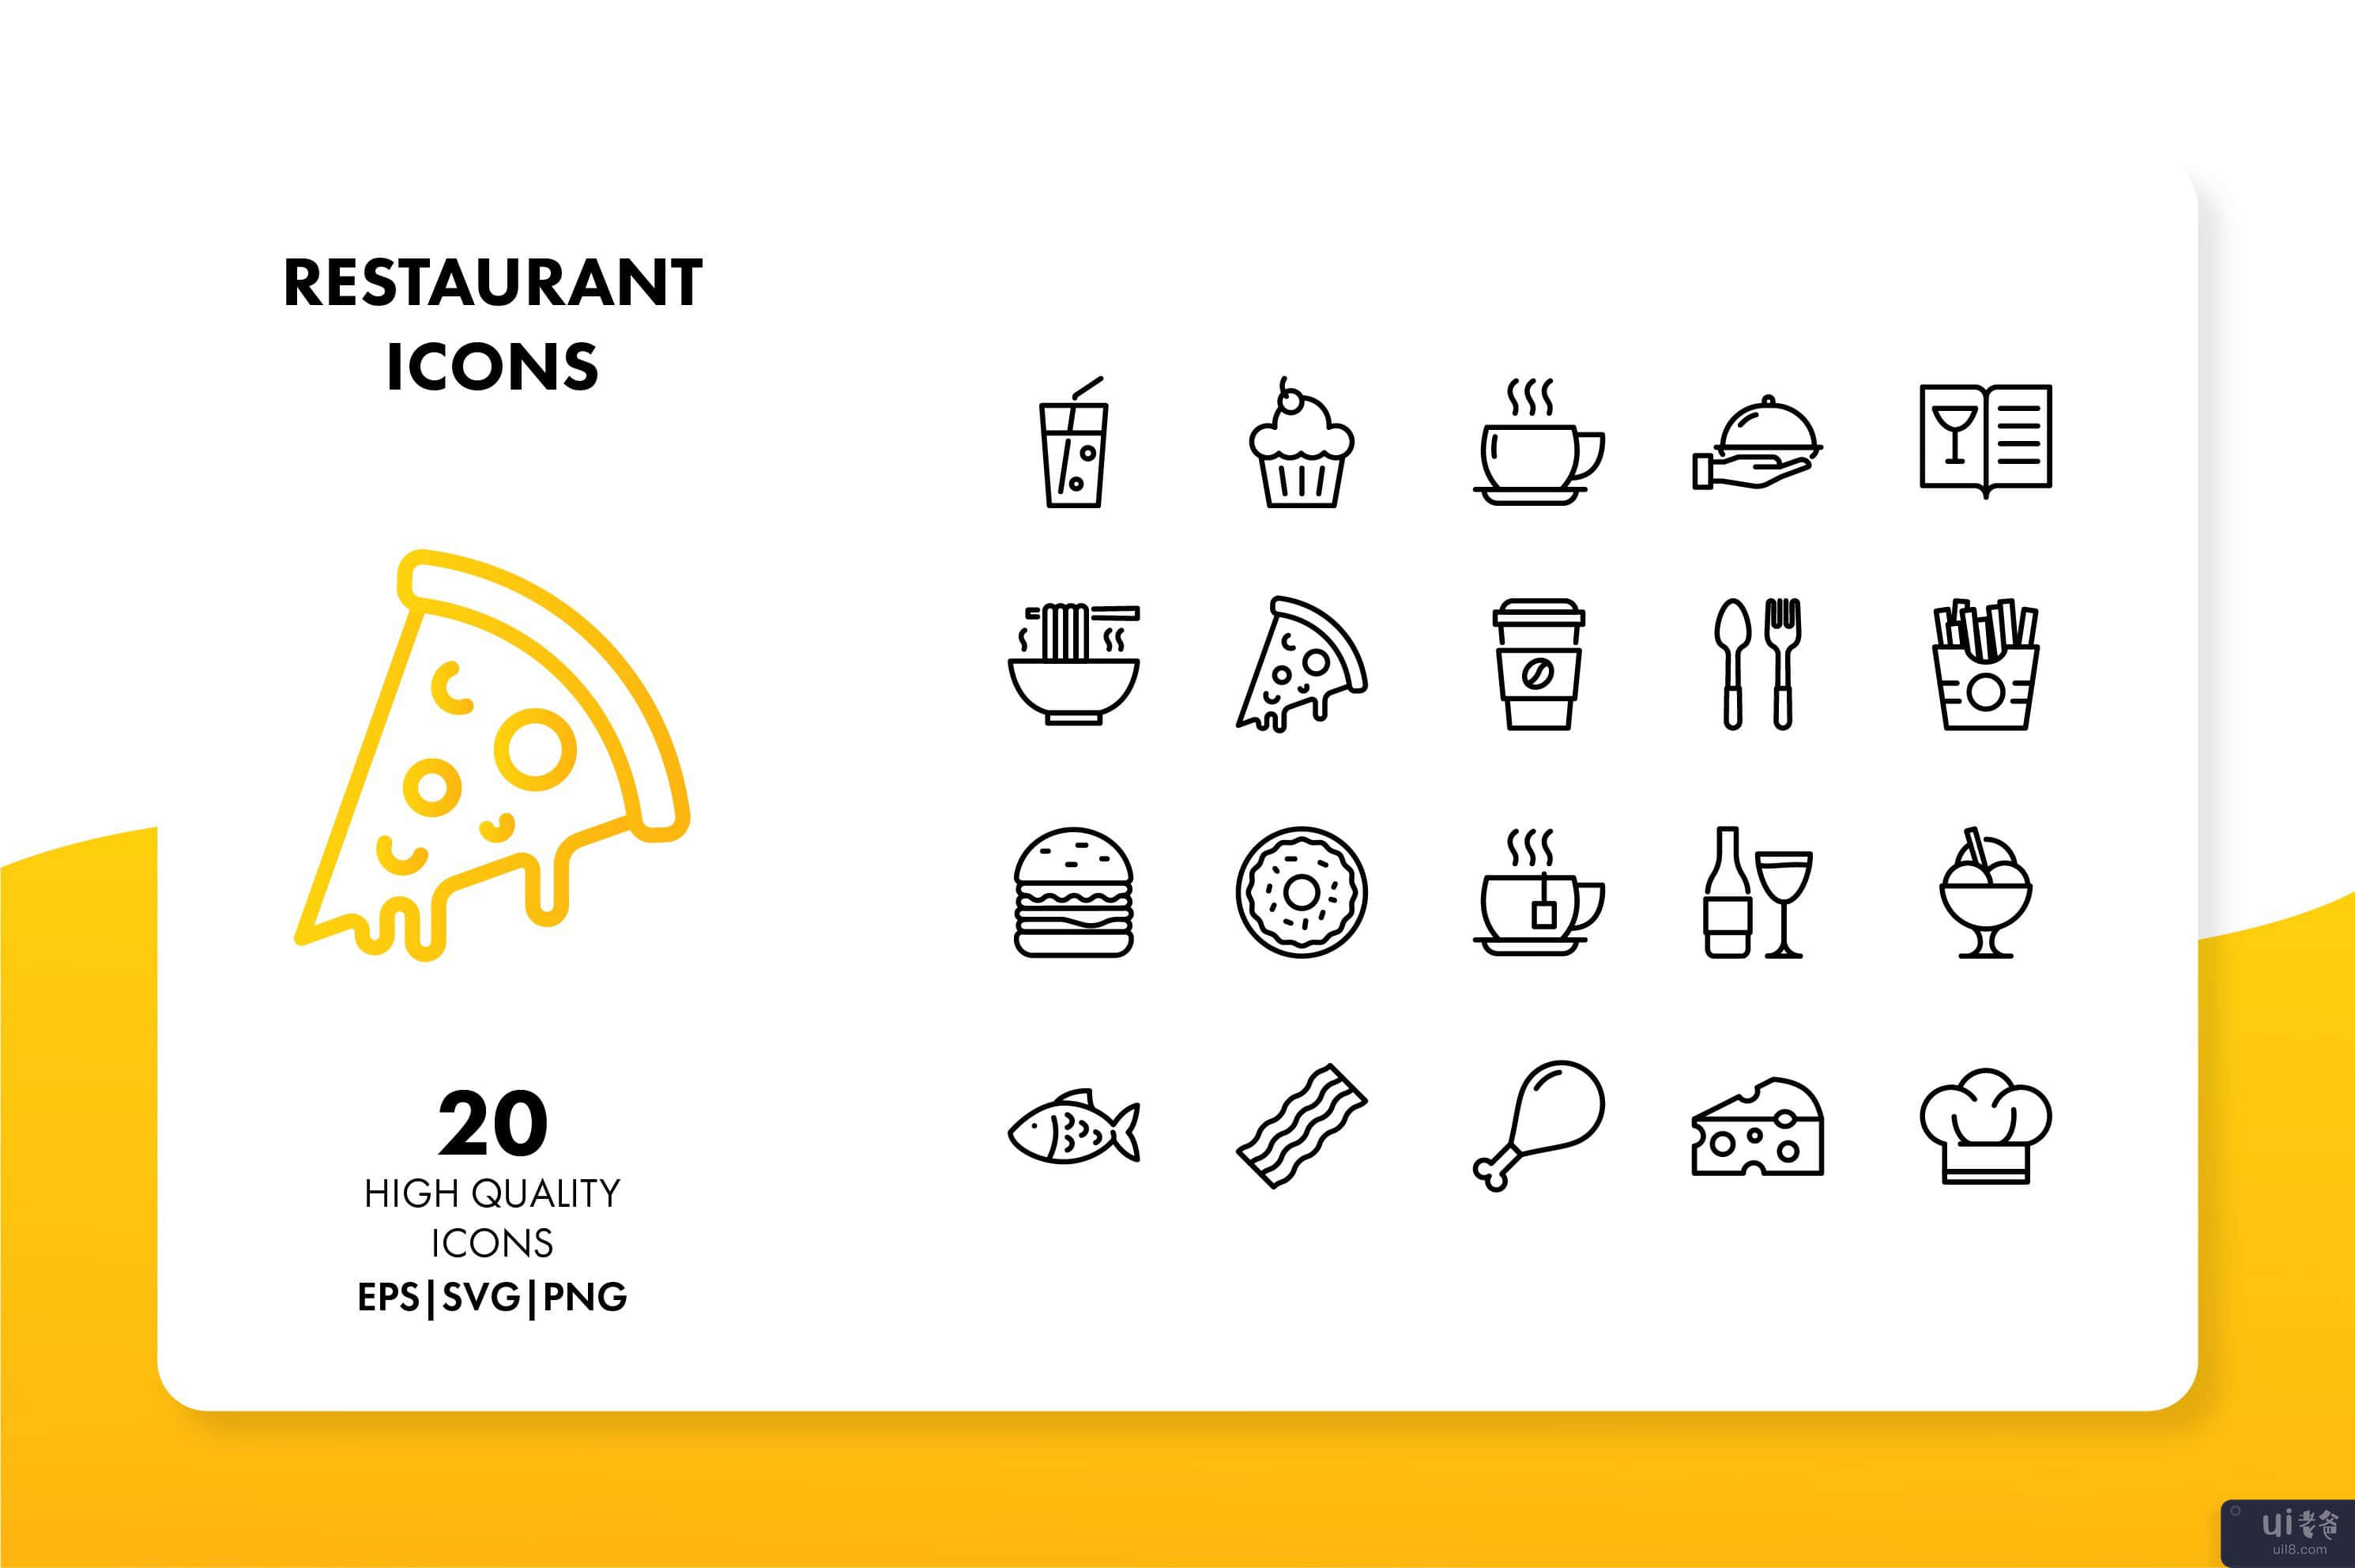 餐厅图标(Restaurant Icons)插图2